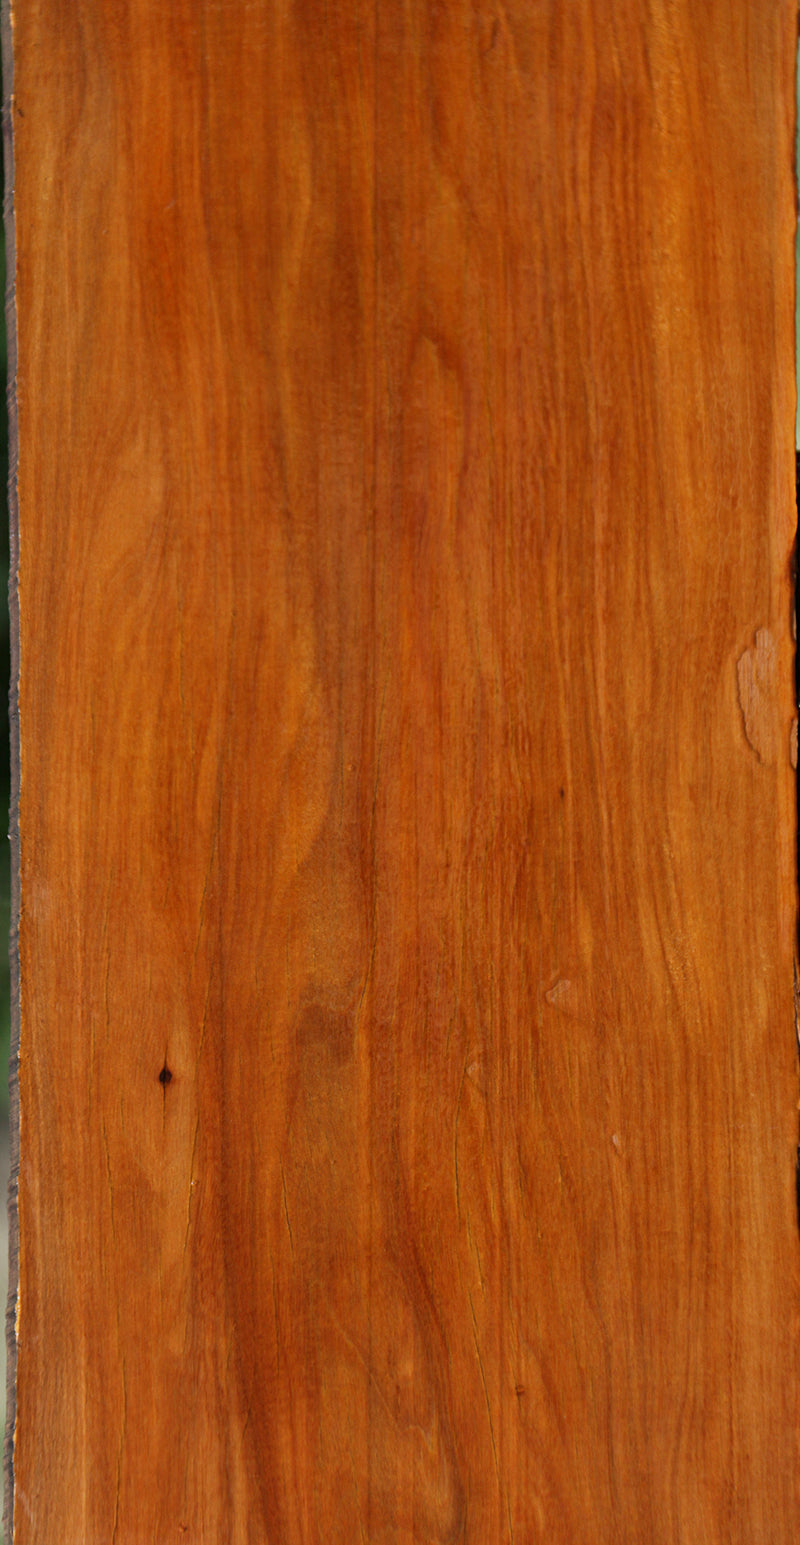 Rustic Pernambuco Micro Lumber